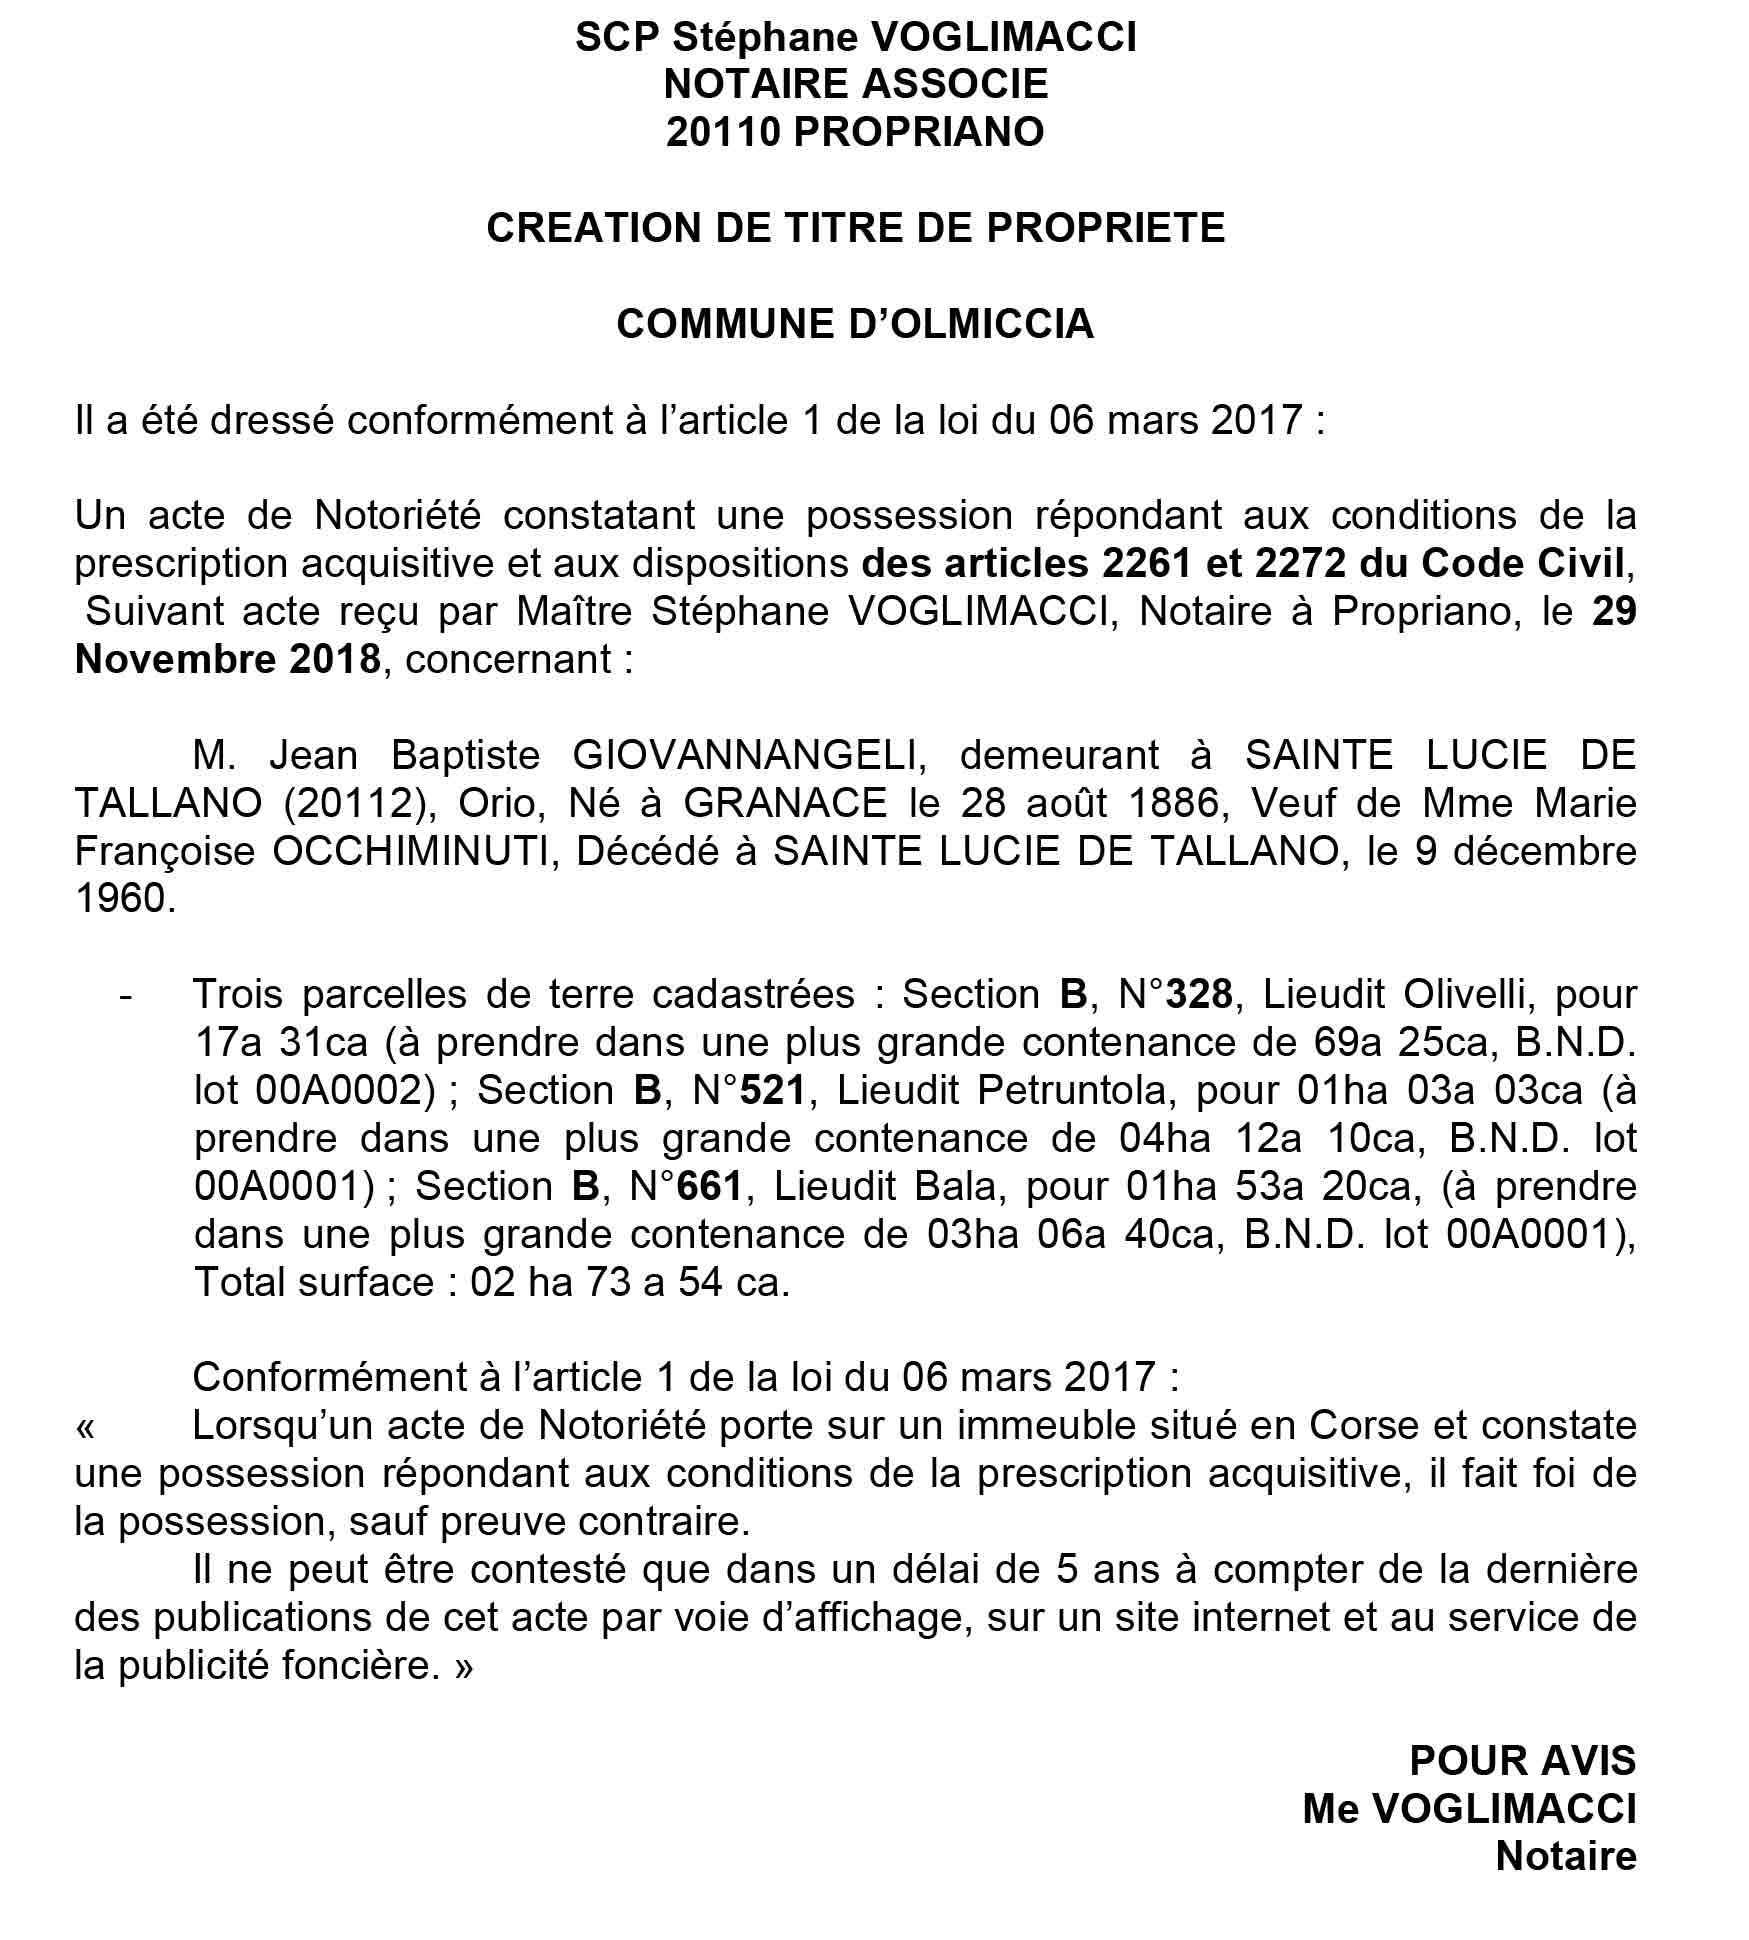 Avis de création de titre de propriété - commune d'Olmiccia (Corse du Sud)